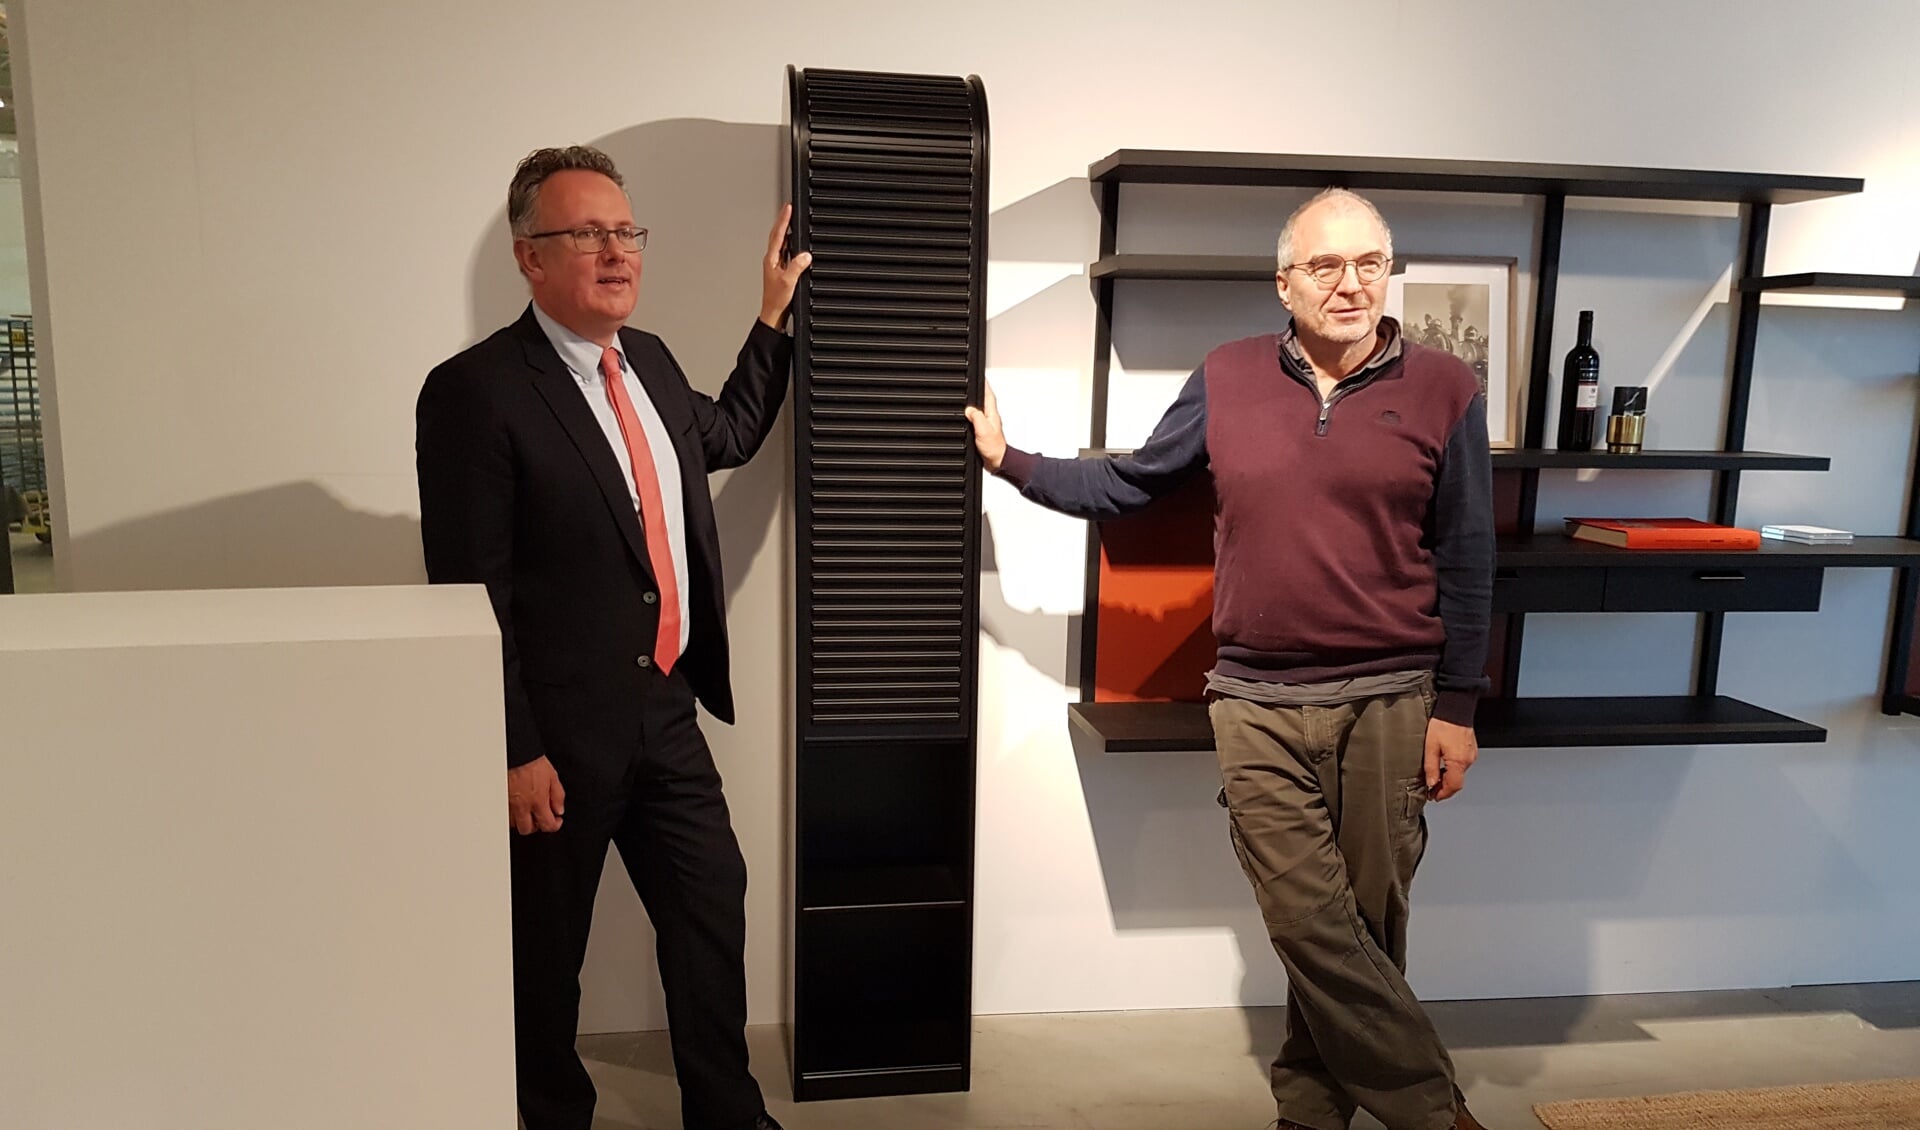 Directeur-eigenaar van Pastoe Rudy Stroink (rechts) reikt de A'dammer kast uit aan winnende wethouder Herman Geerdes (links)